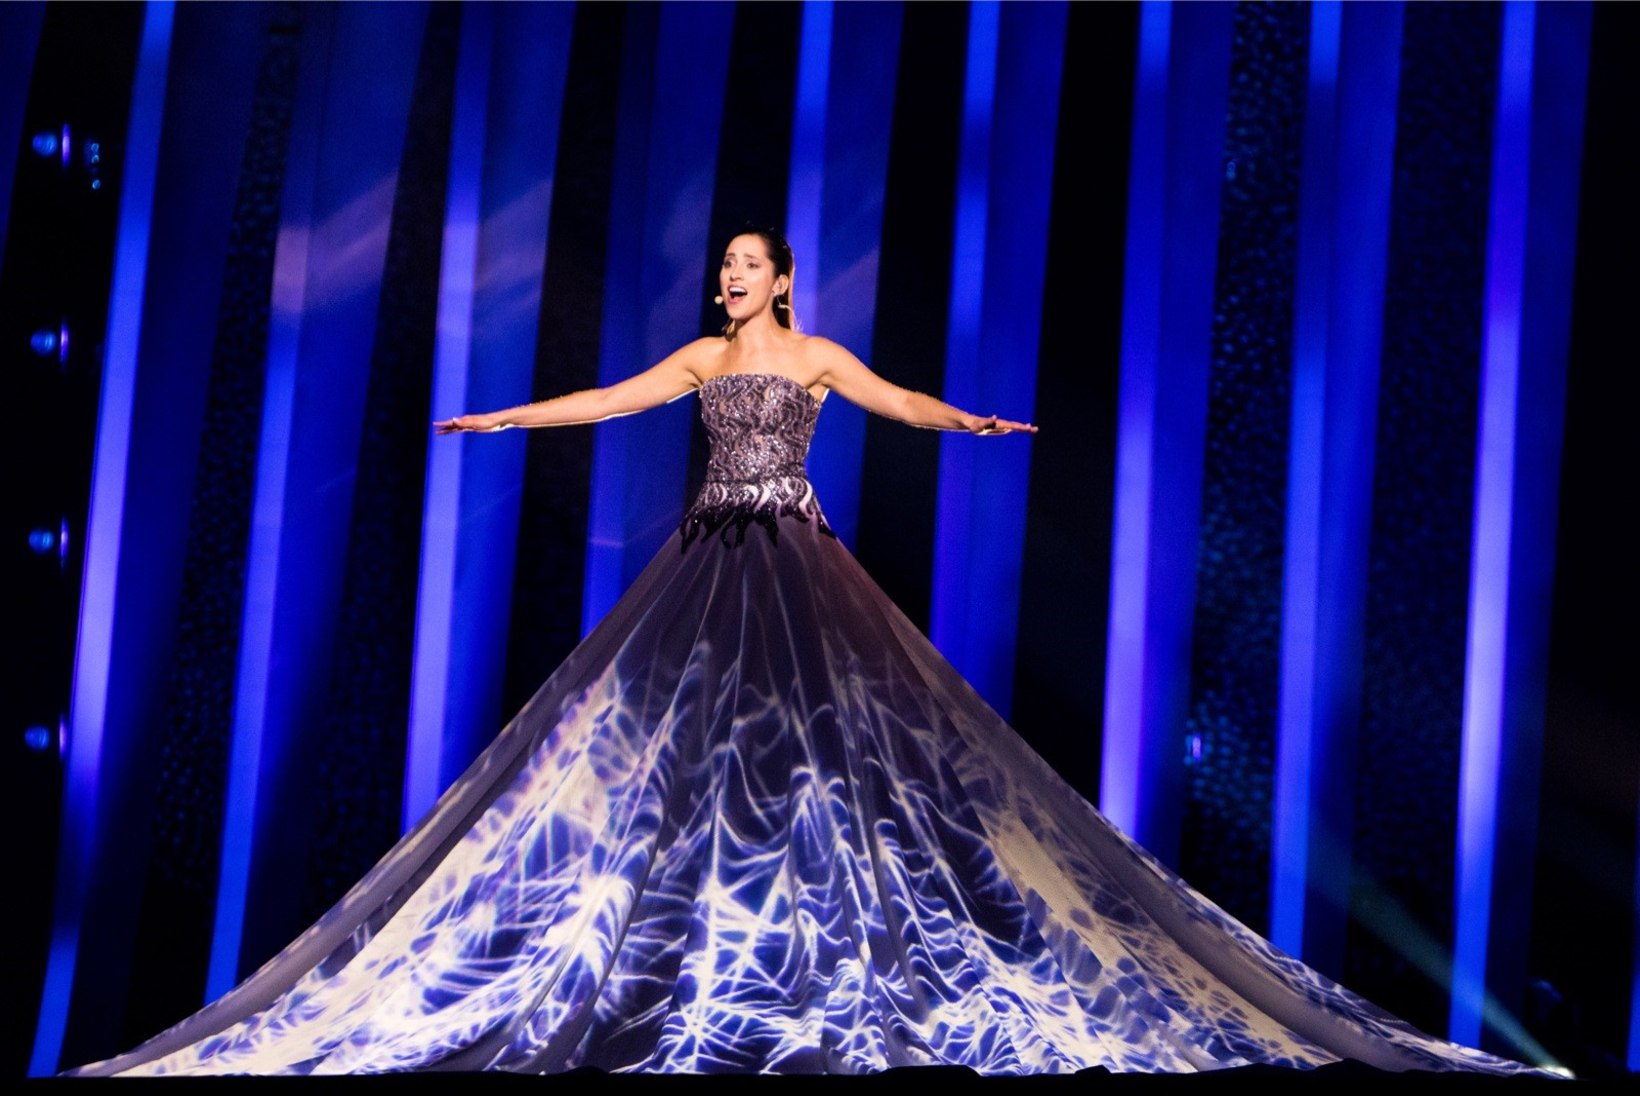 Eesti esineb Eurovisioni finaalis kuuendana